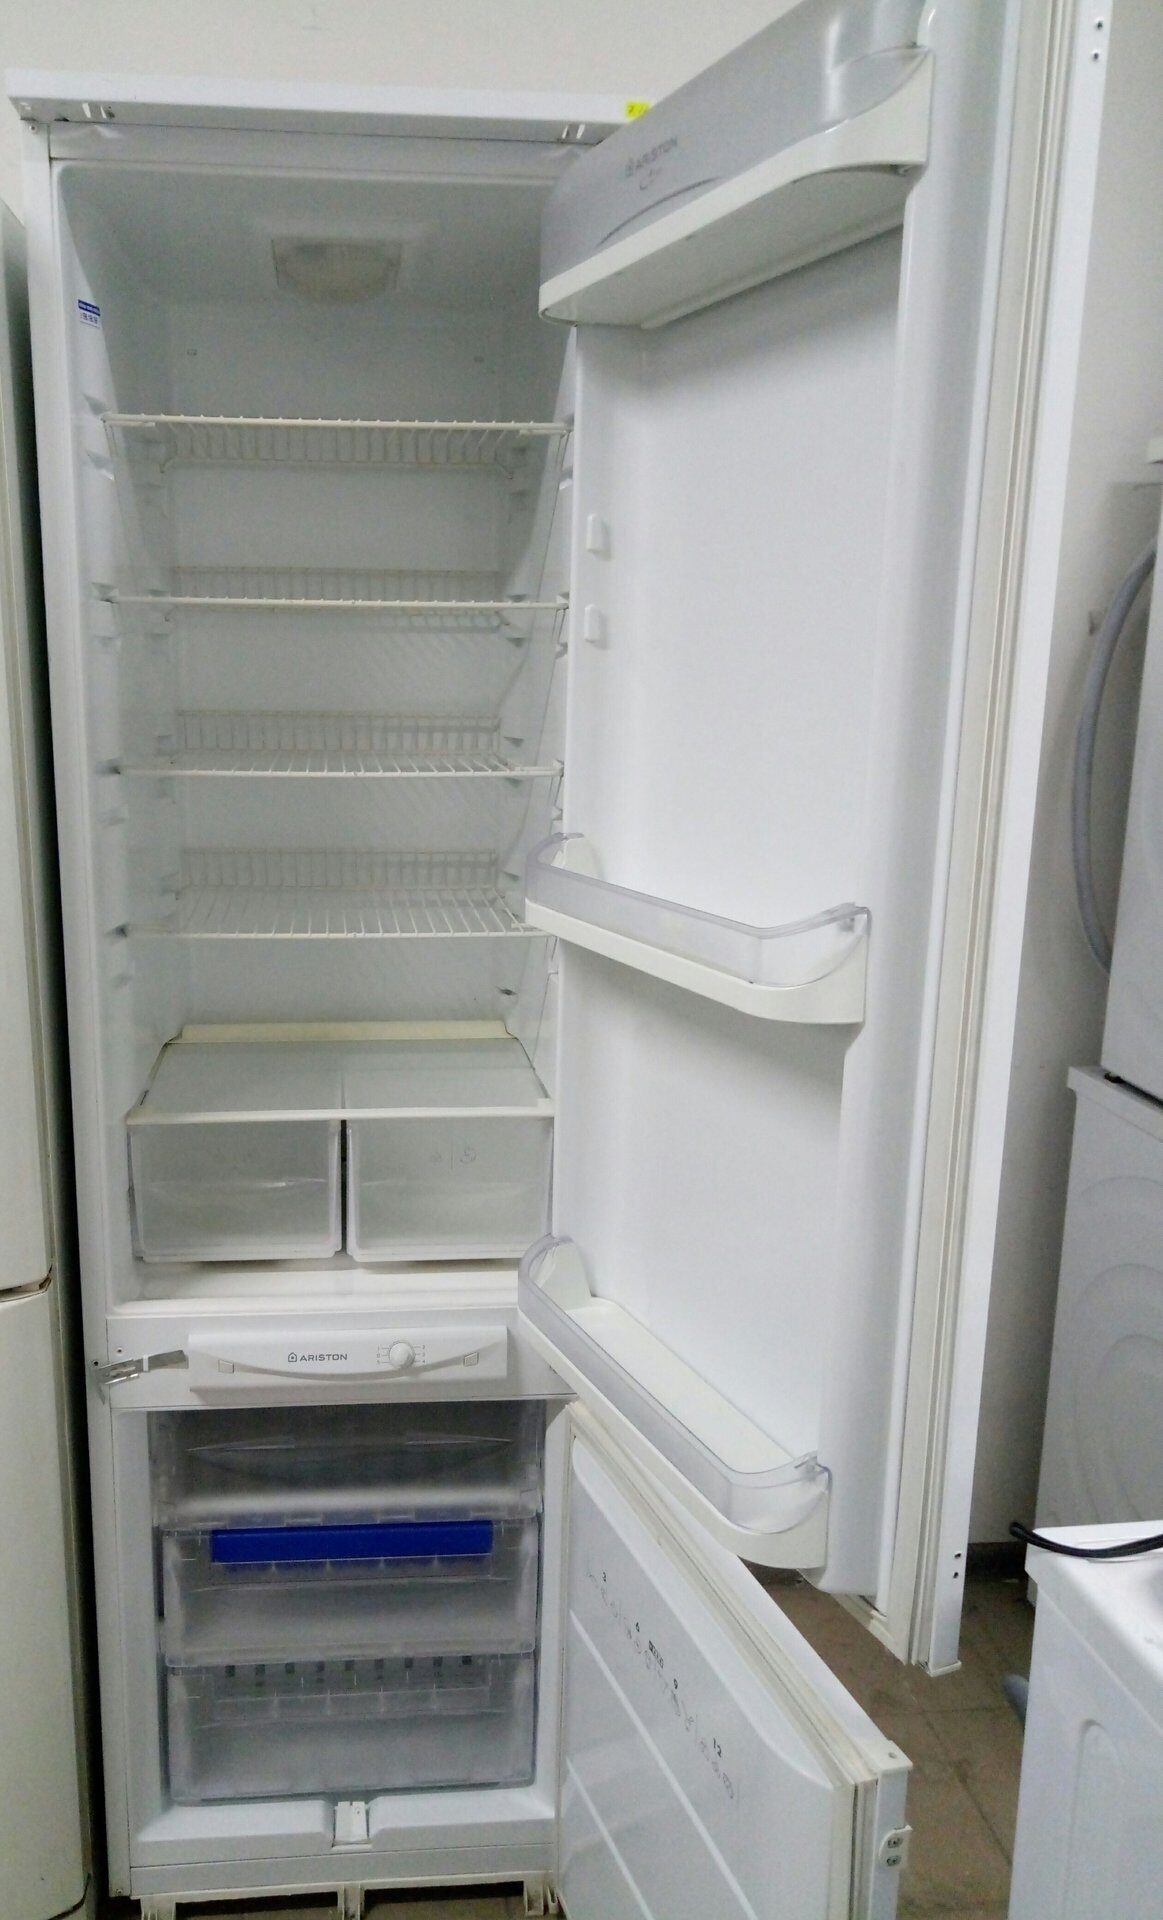 Встроенный холодильник hotpoint ariston